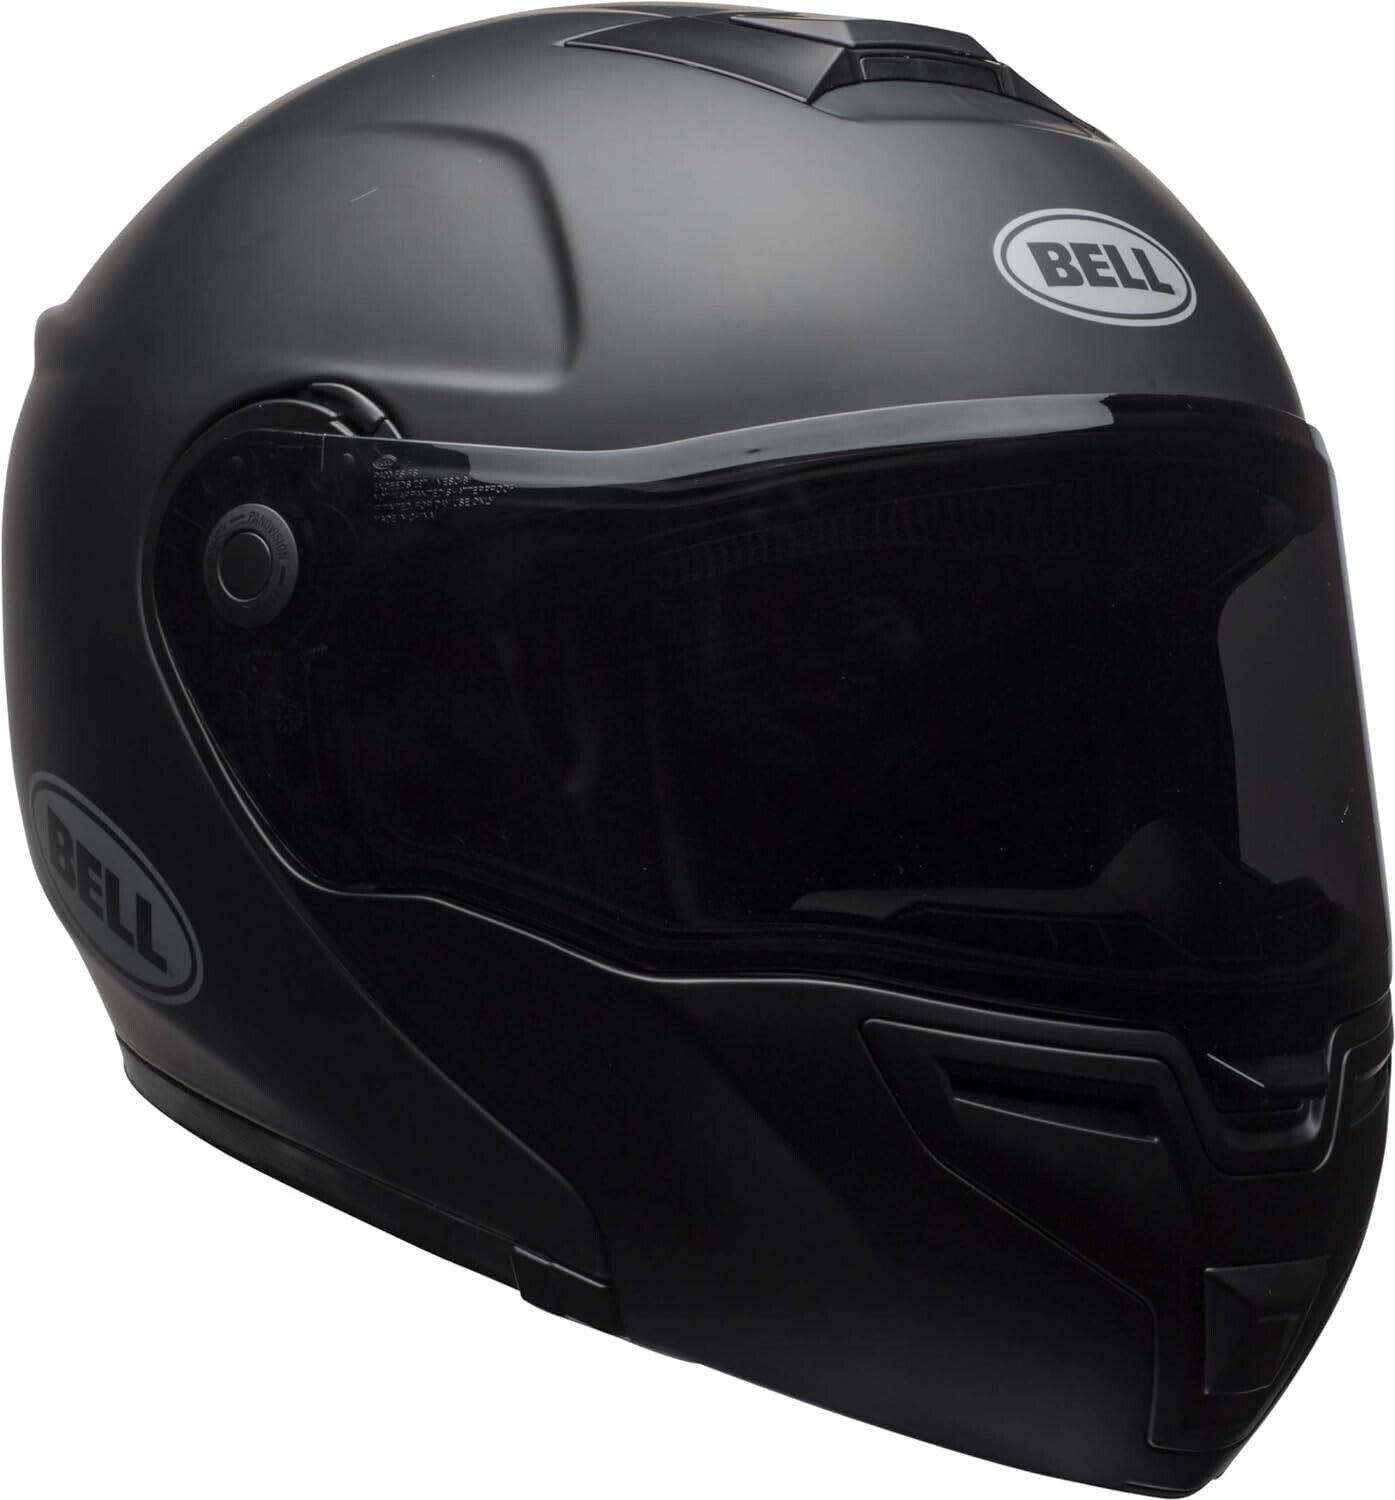 Bell SRT Modular Street Helmet - XX Large - Blackout Matte/Gloss